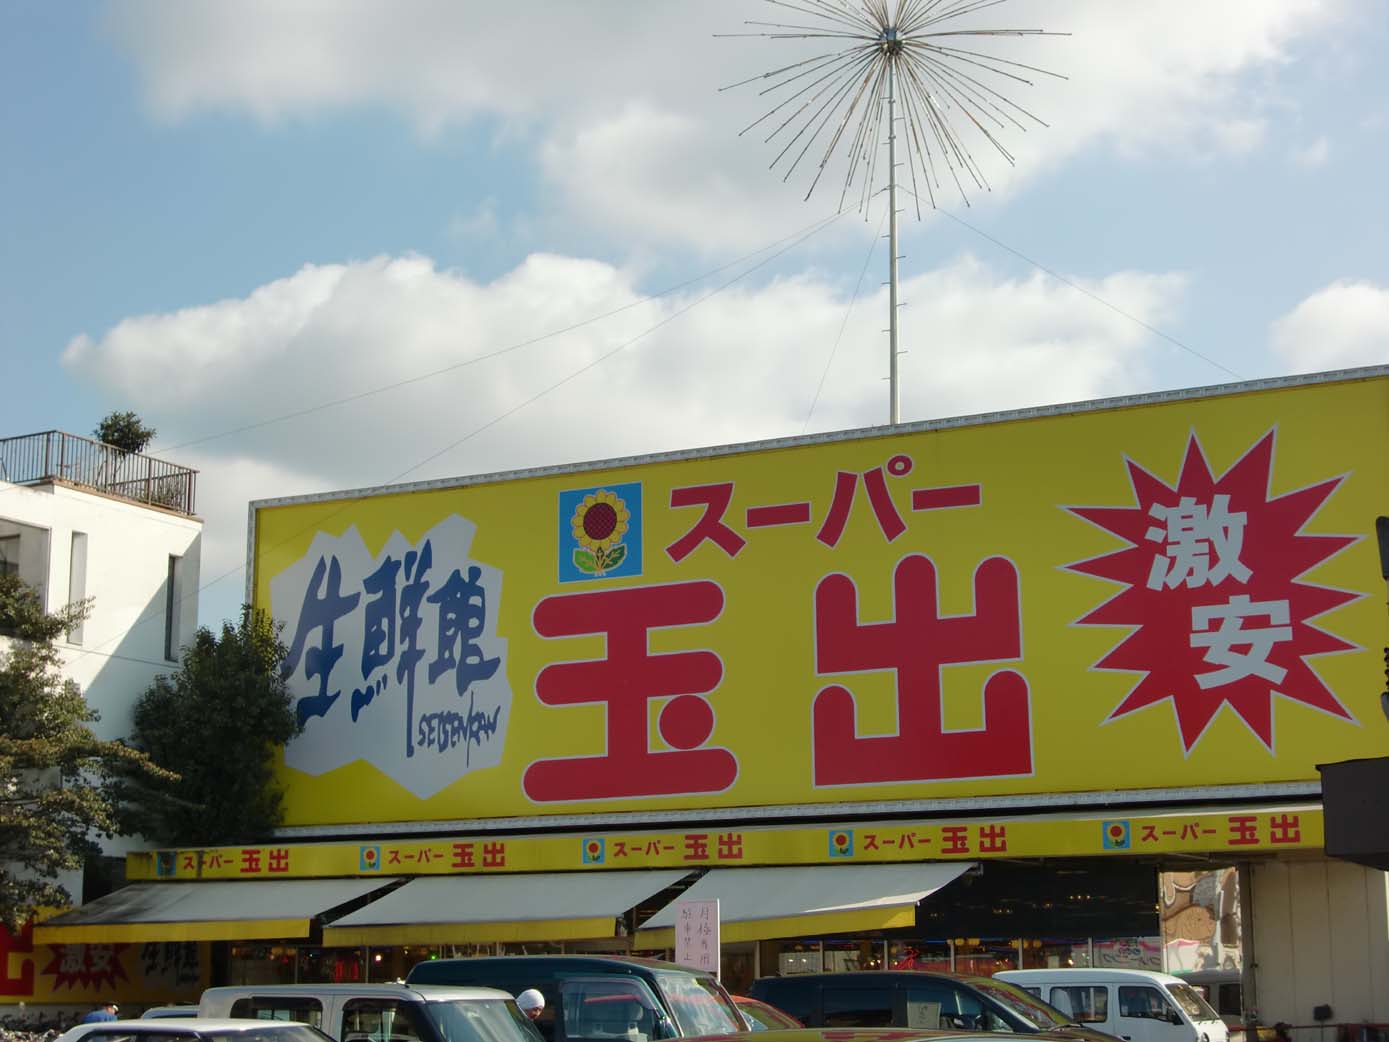 Supermarket. 408m to Super Tamade Amami store (Super)